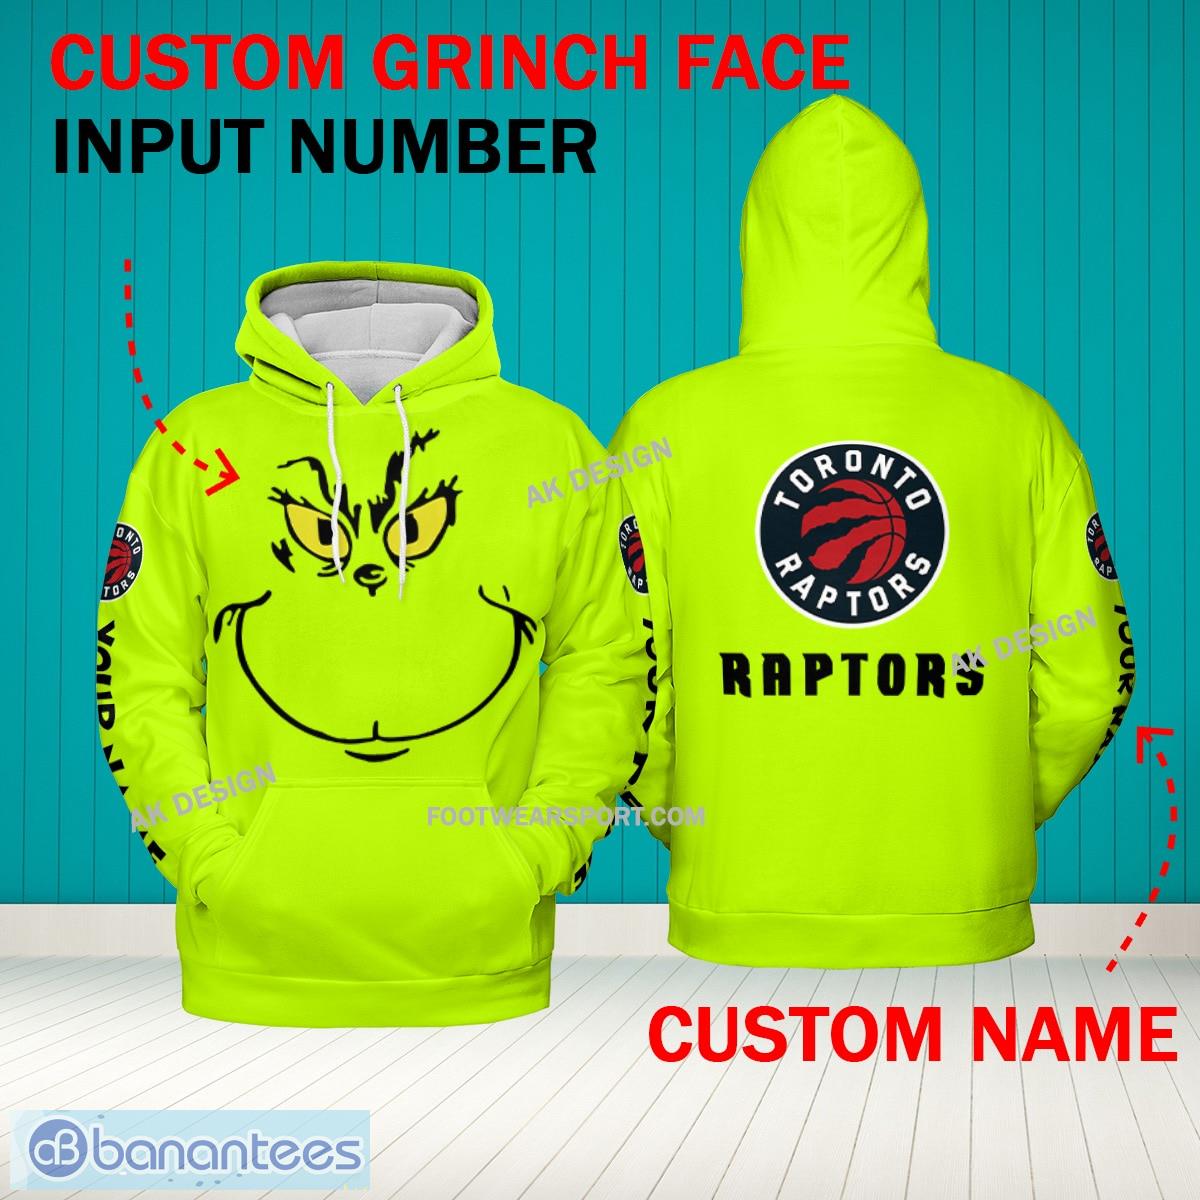 Grinch Face Toronto Raptors 3D Hoodie, Zip Hoodie, Sweater Green AOP Custom Number And Name - Grinch Face NBA Toronto Raptors 3D Hoodie